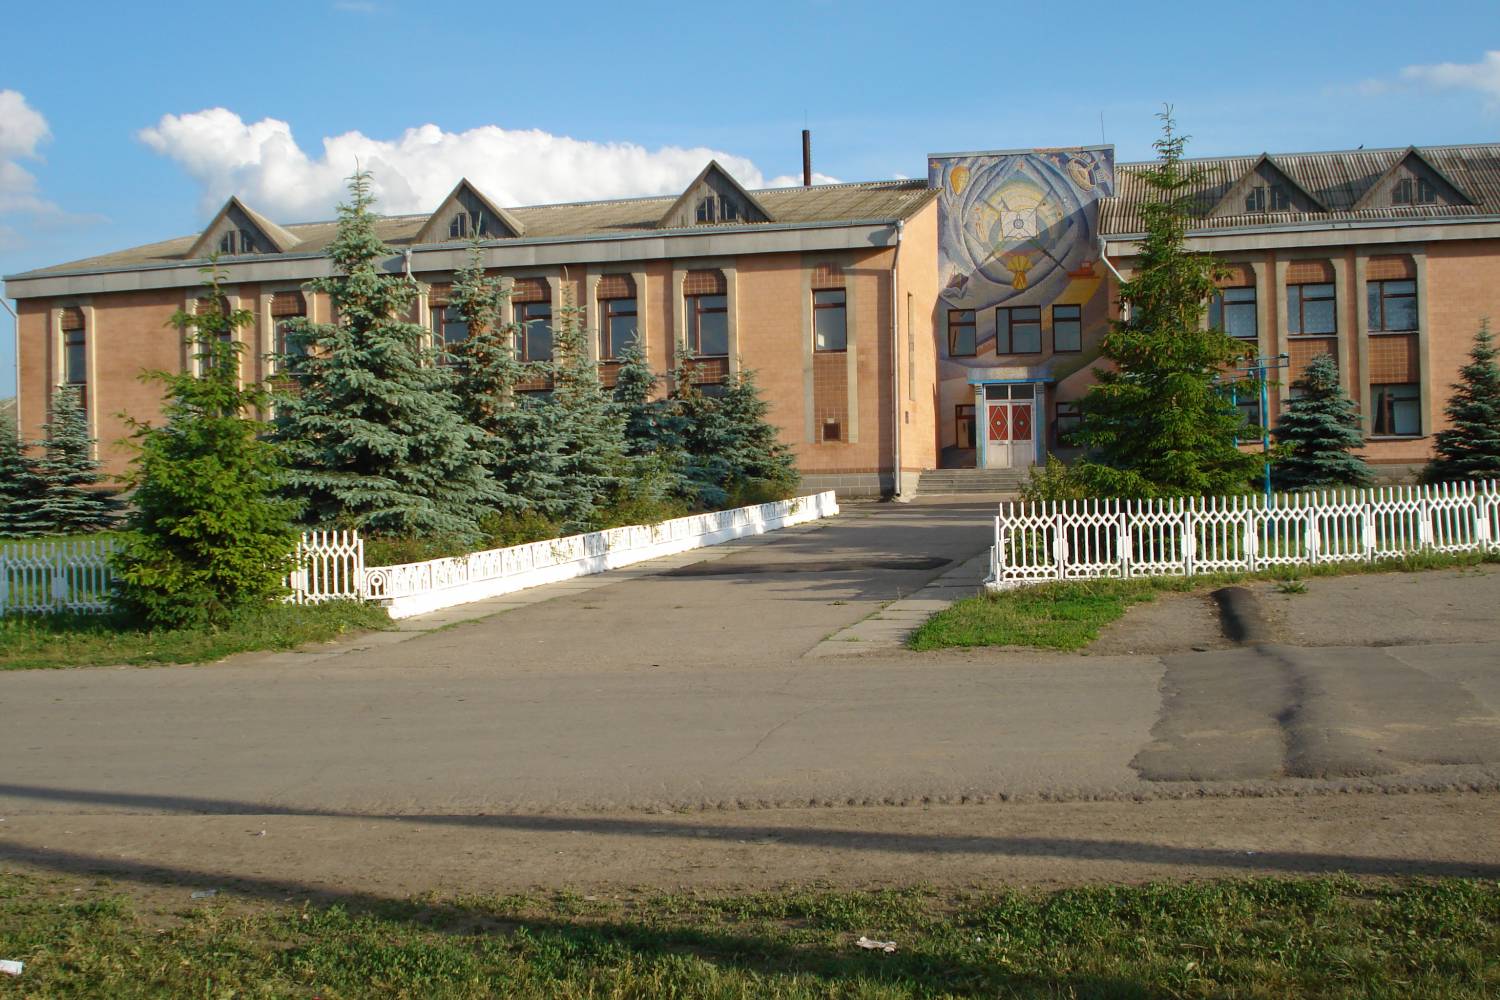 A grammar school in the village of Sharyn